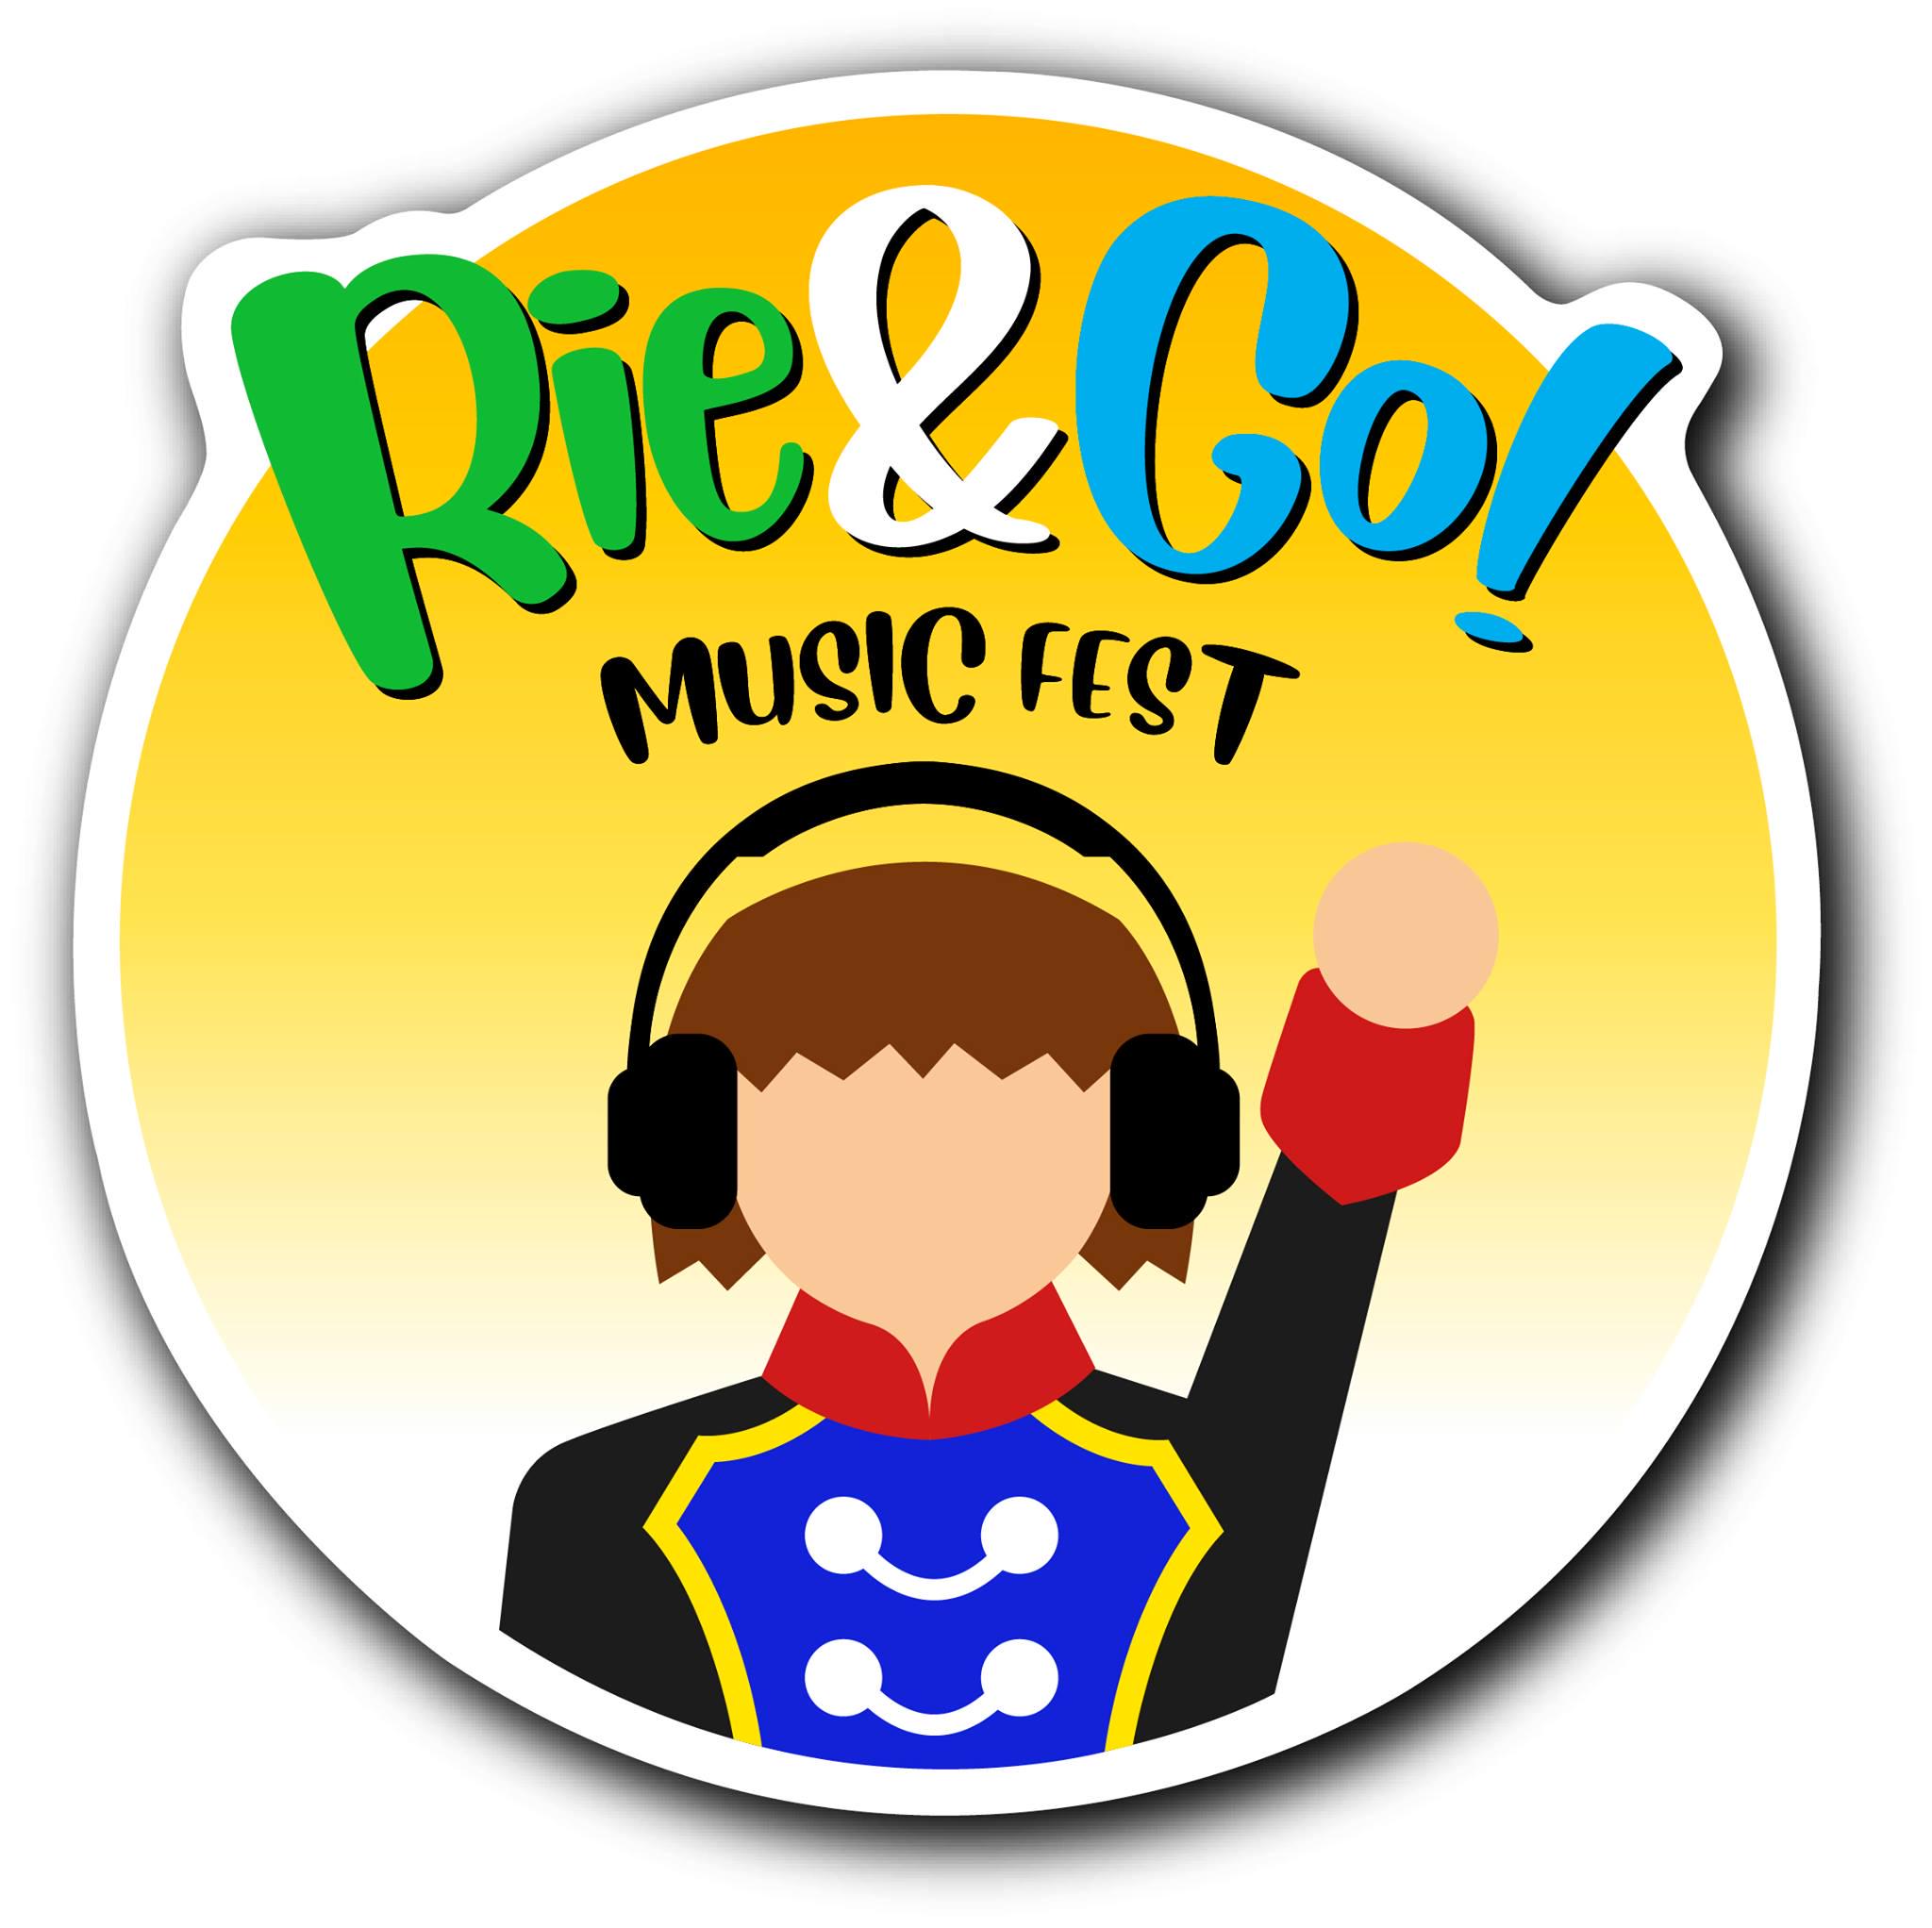 Rie&Go! Music Fest